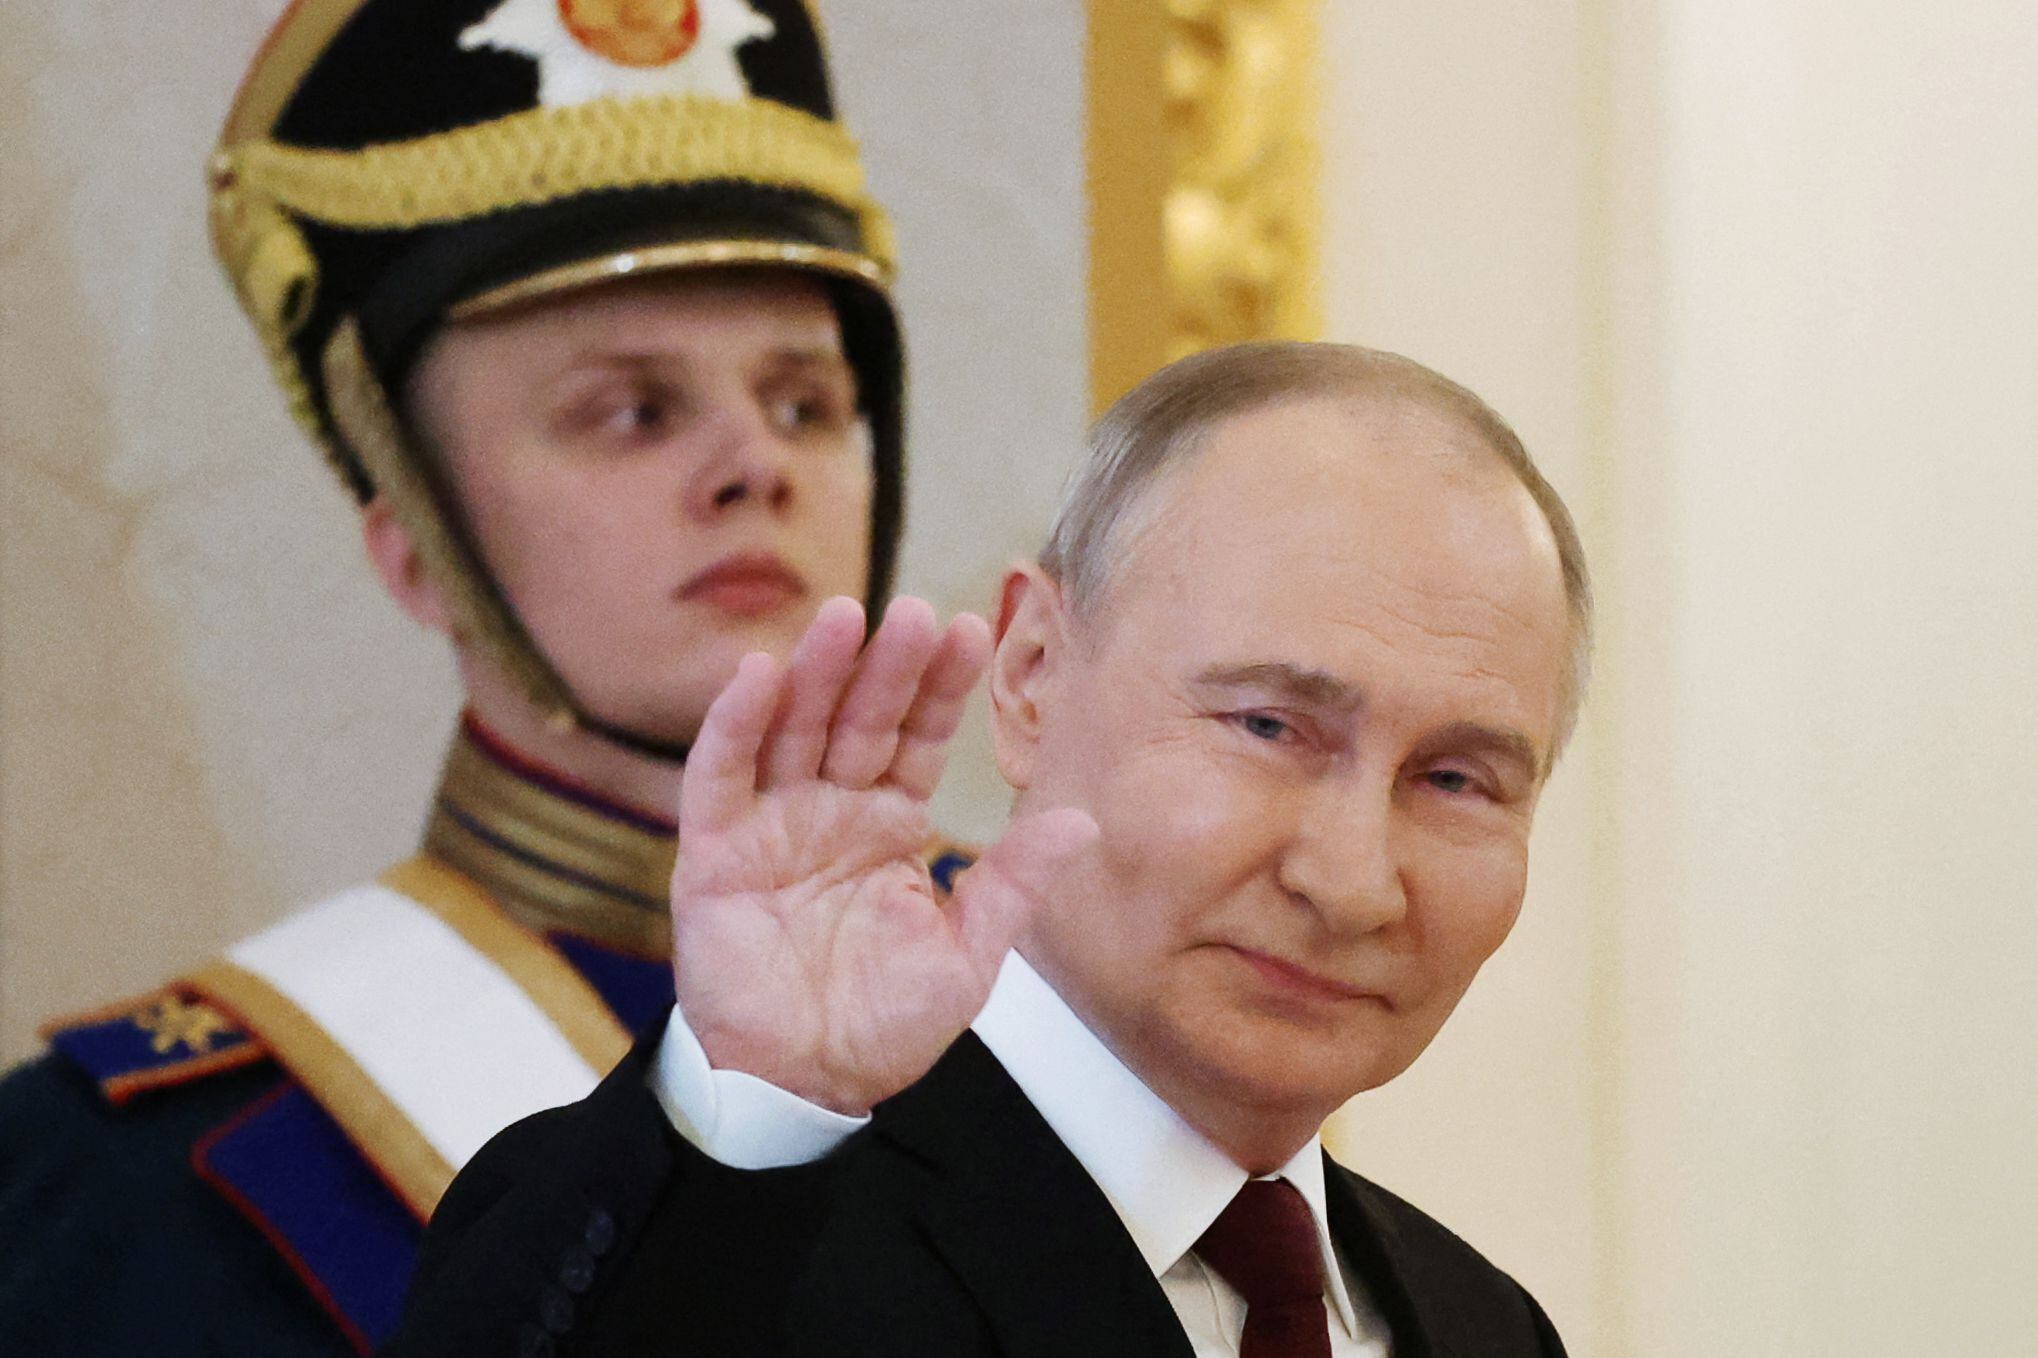 El presidente de Rusia, Vladimir Putin, saluda cuando llega a su ceremonia de toma de posesión en el Kremlin en Moscú el 7 de mayo de 2024. (Foto de Vyacheslav PROKOFYEV / POOL / AFP).